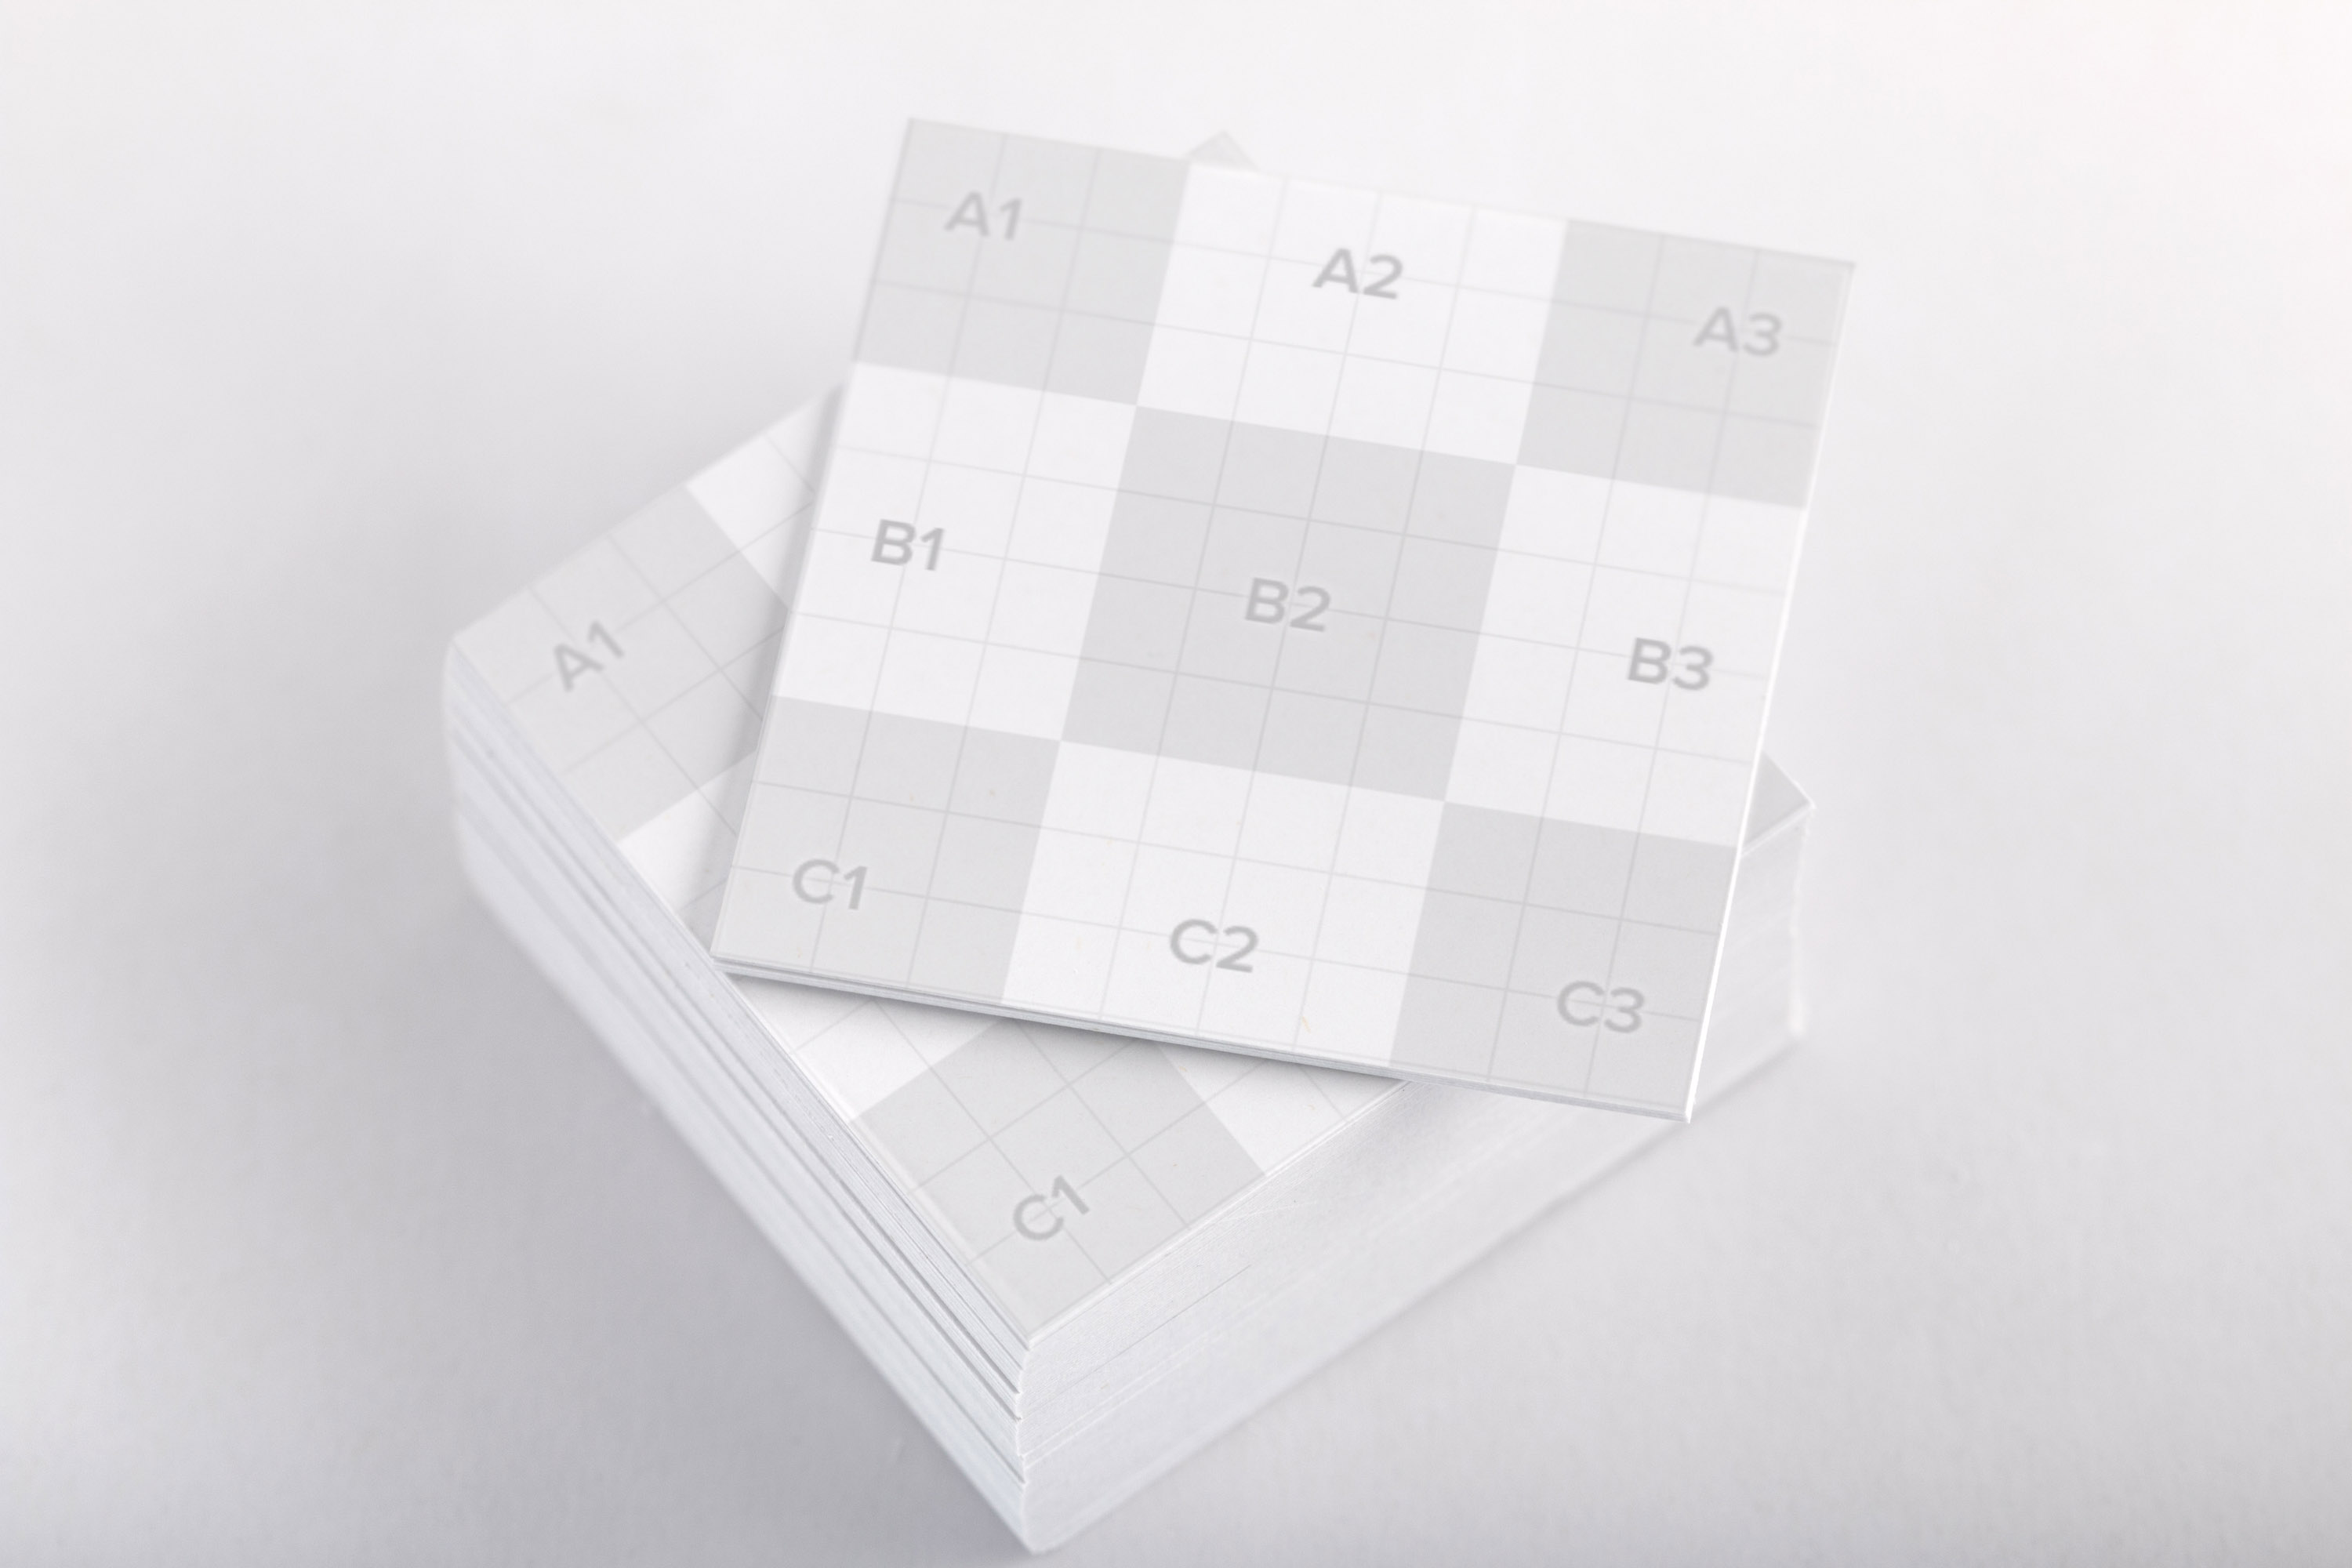 方形企业名片设计样机01 Square Business Cards Mockup 01插图(1)